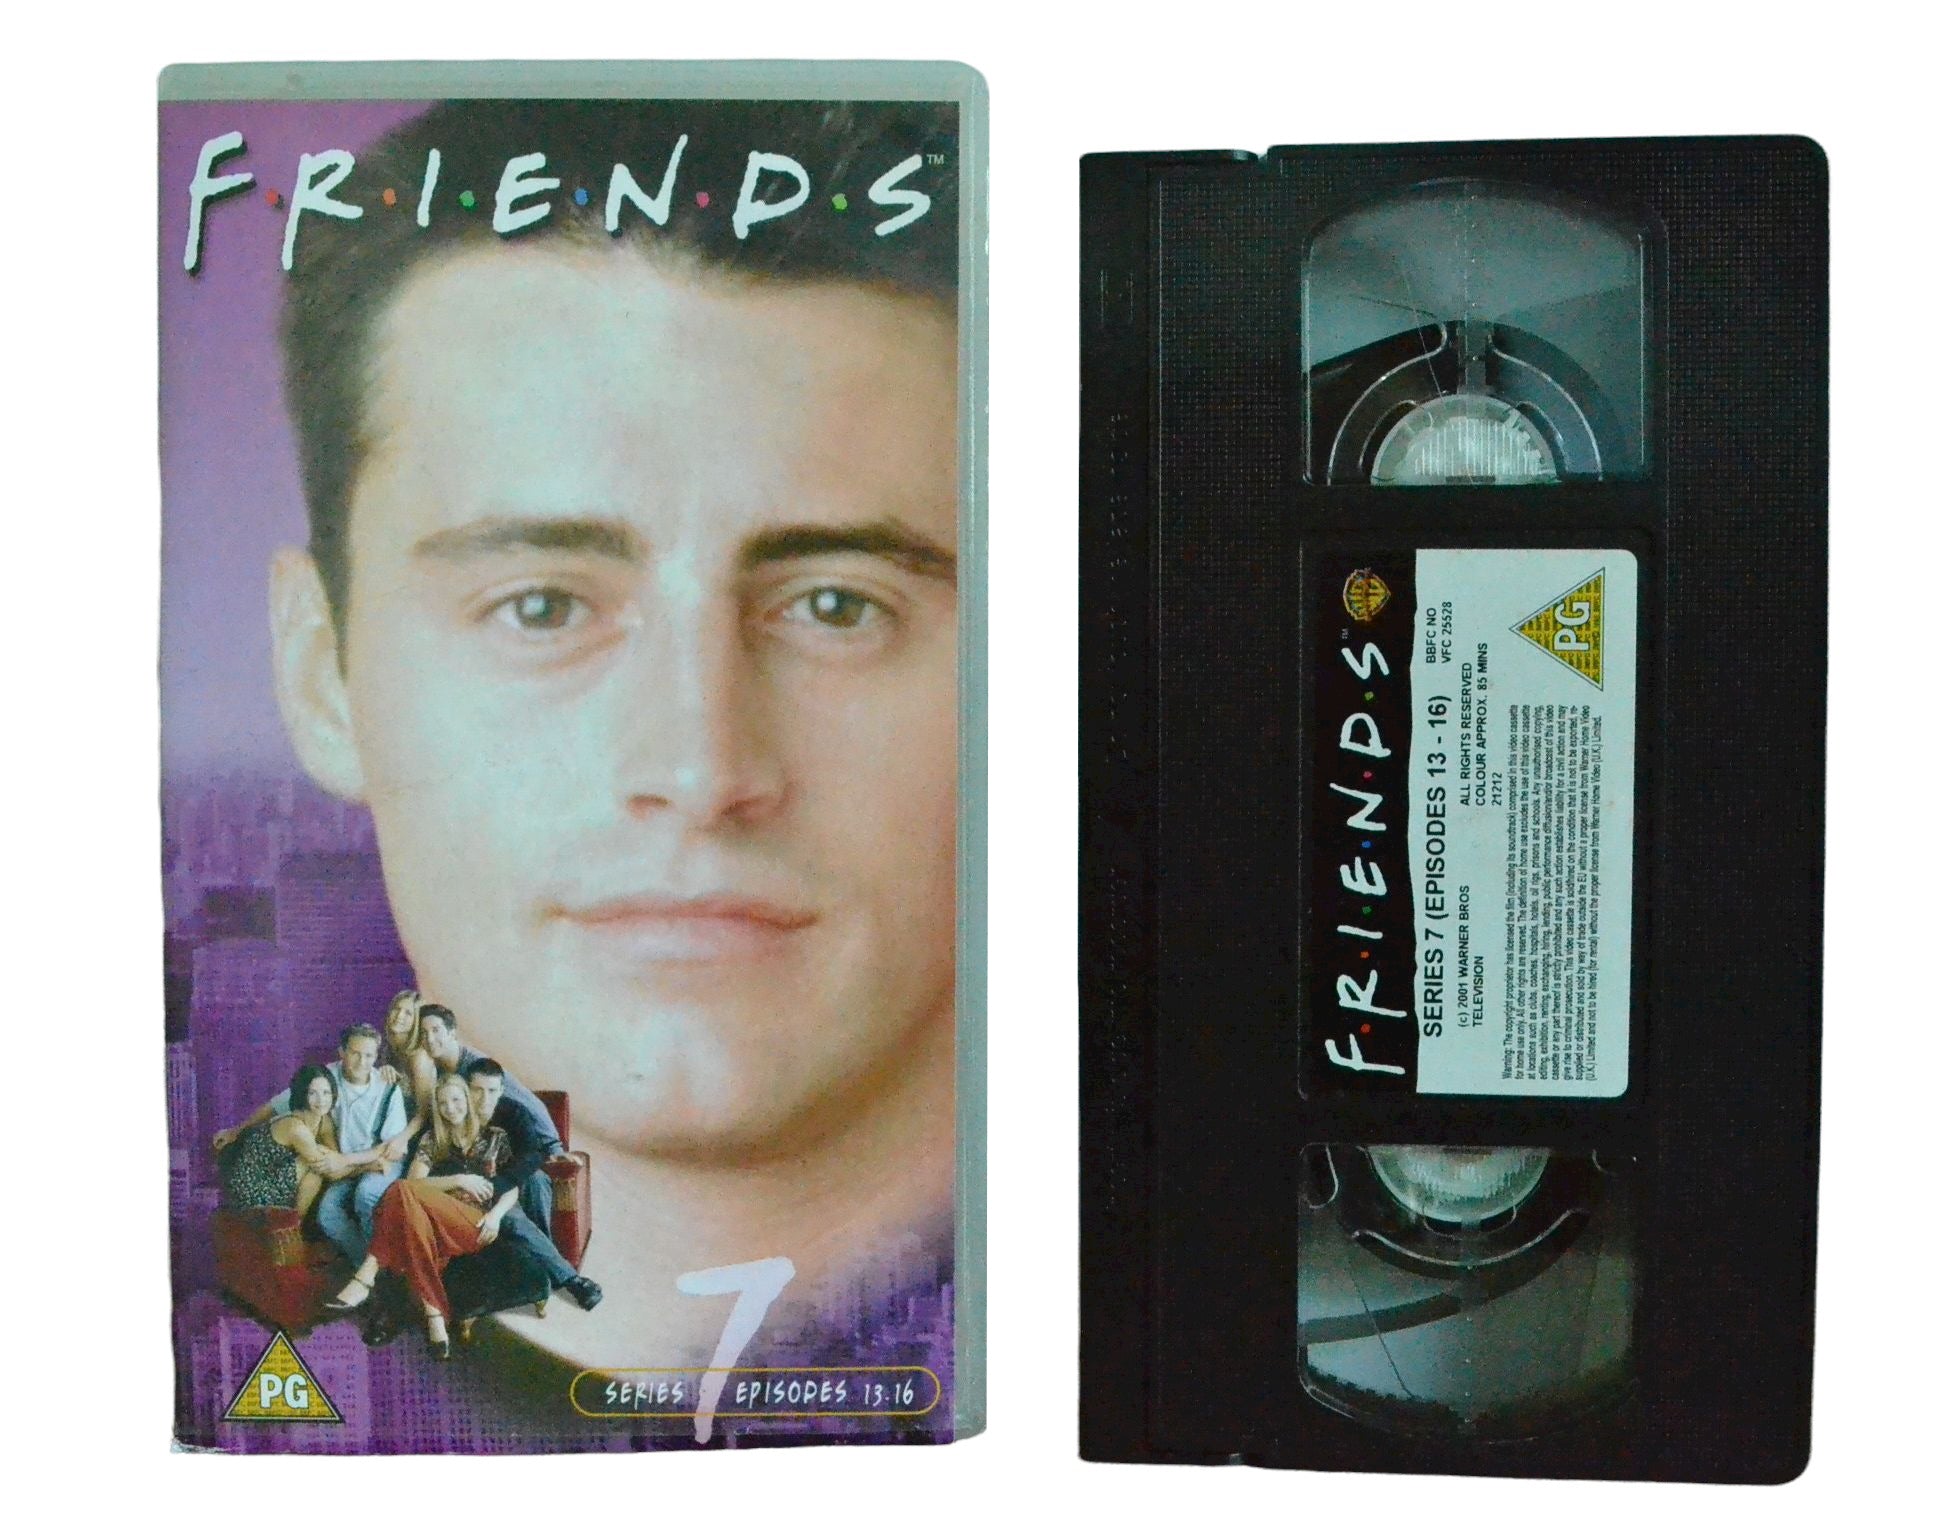 FRIENDS - Series 7 (Episodes 13-16) - Jennifer Aniston - Warner Home Video - Vintage - Pal VHS-